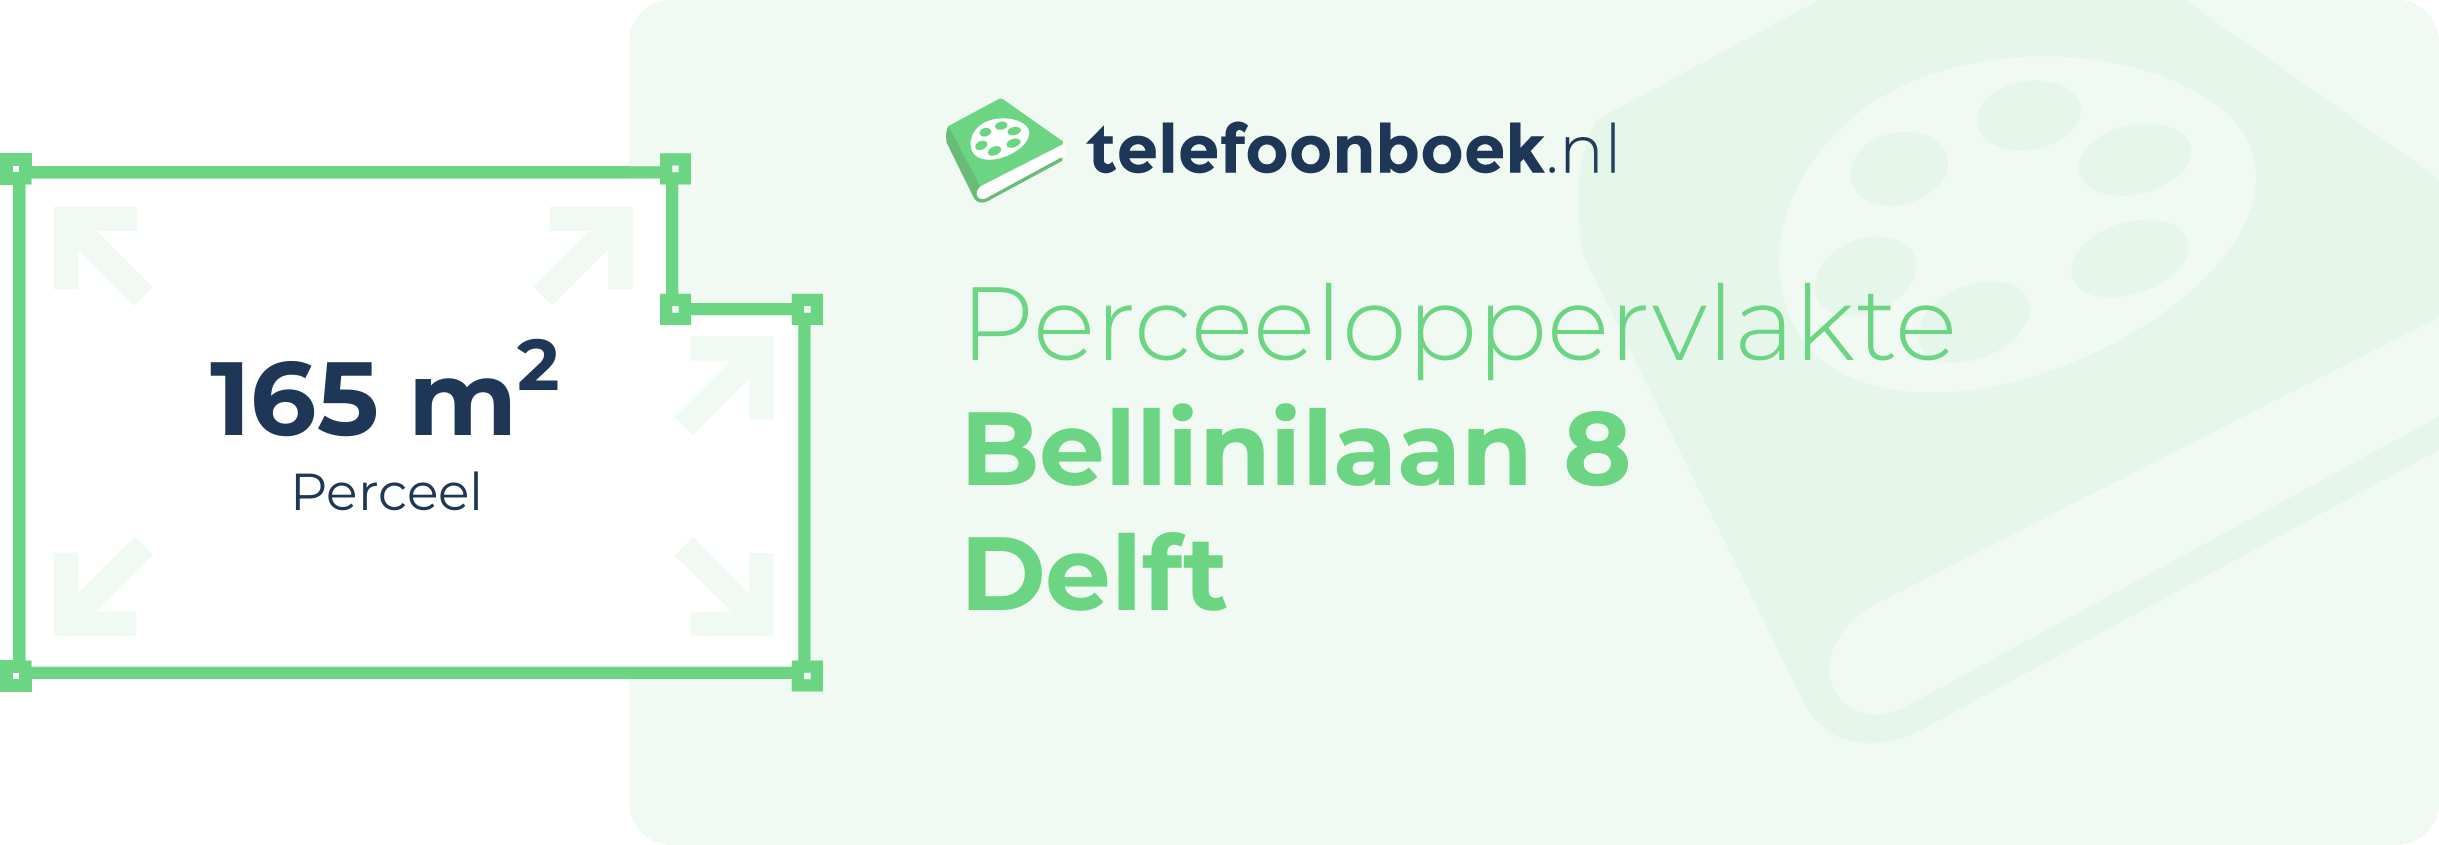 Perceeloppervlakte Bellinilaan 8 Delft